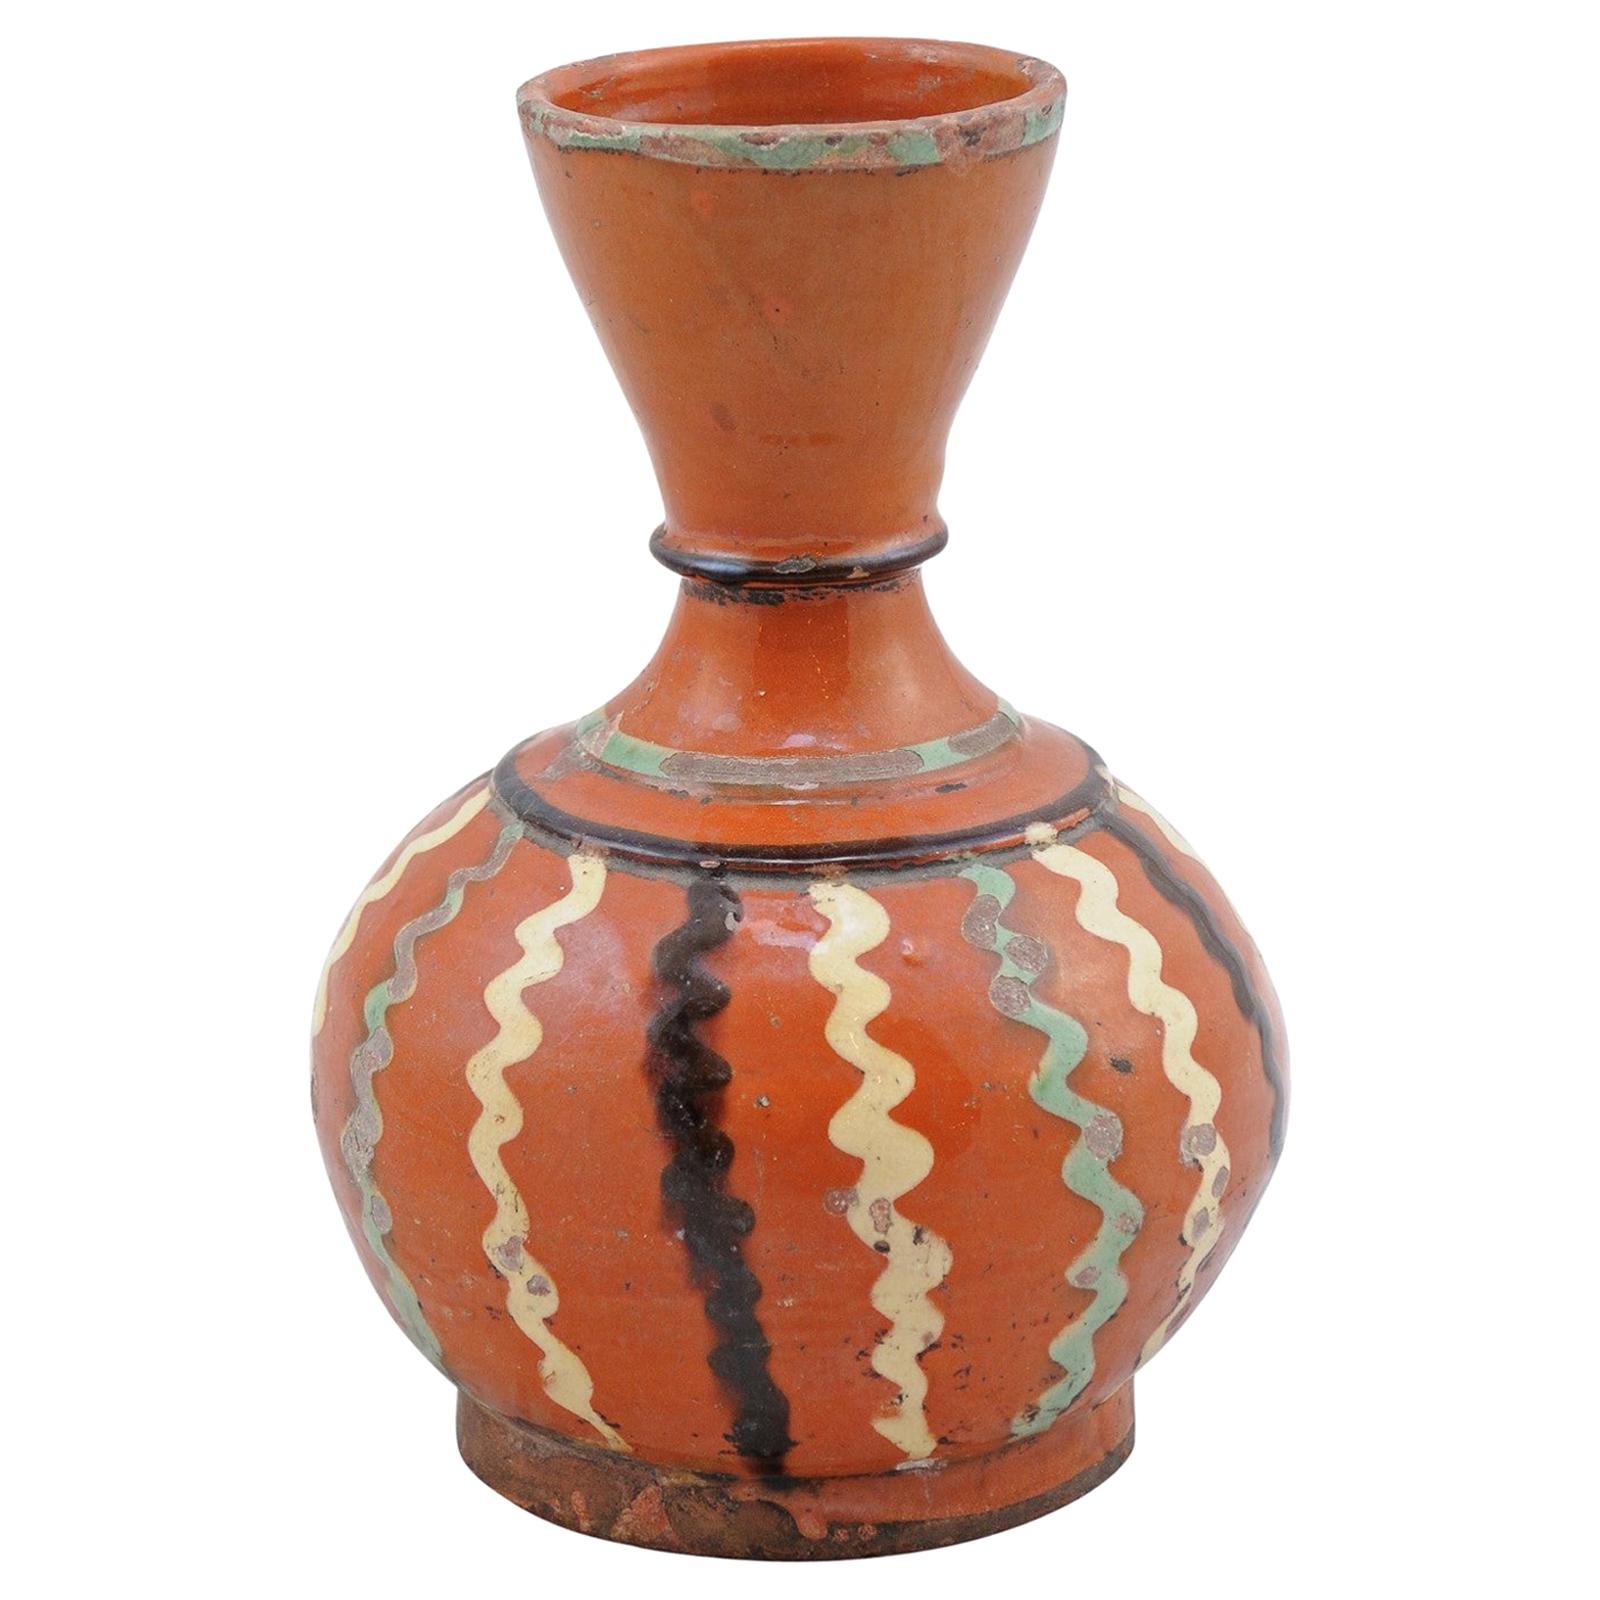 Weinservierkrug aus Jaspe-Keramik des 19. Jahrhunderts mit rostfarbener Glasur und wellenförmigem Dekor